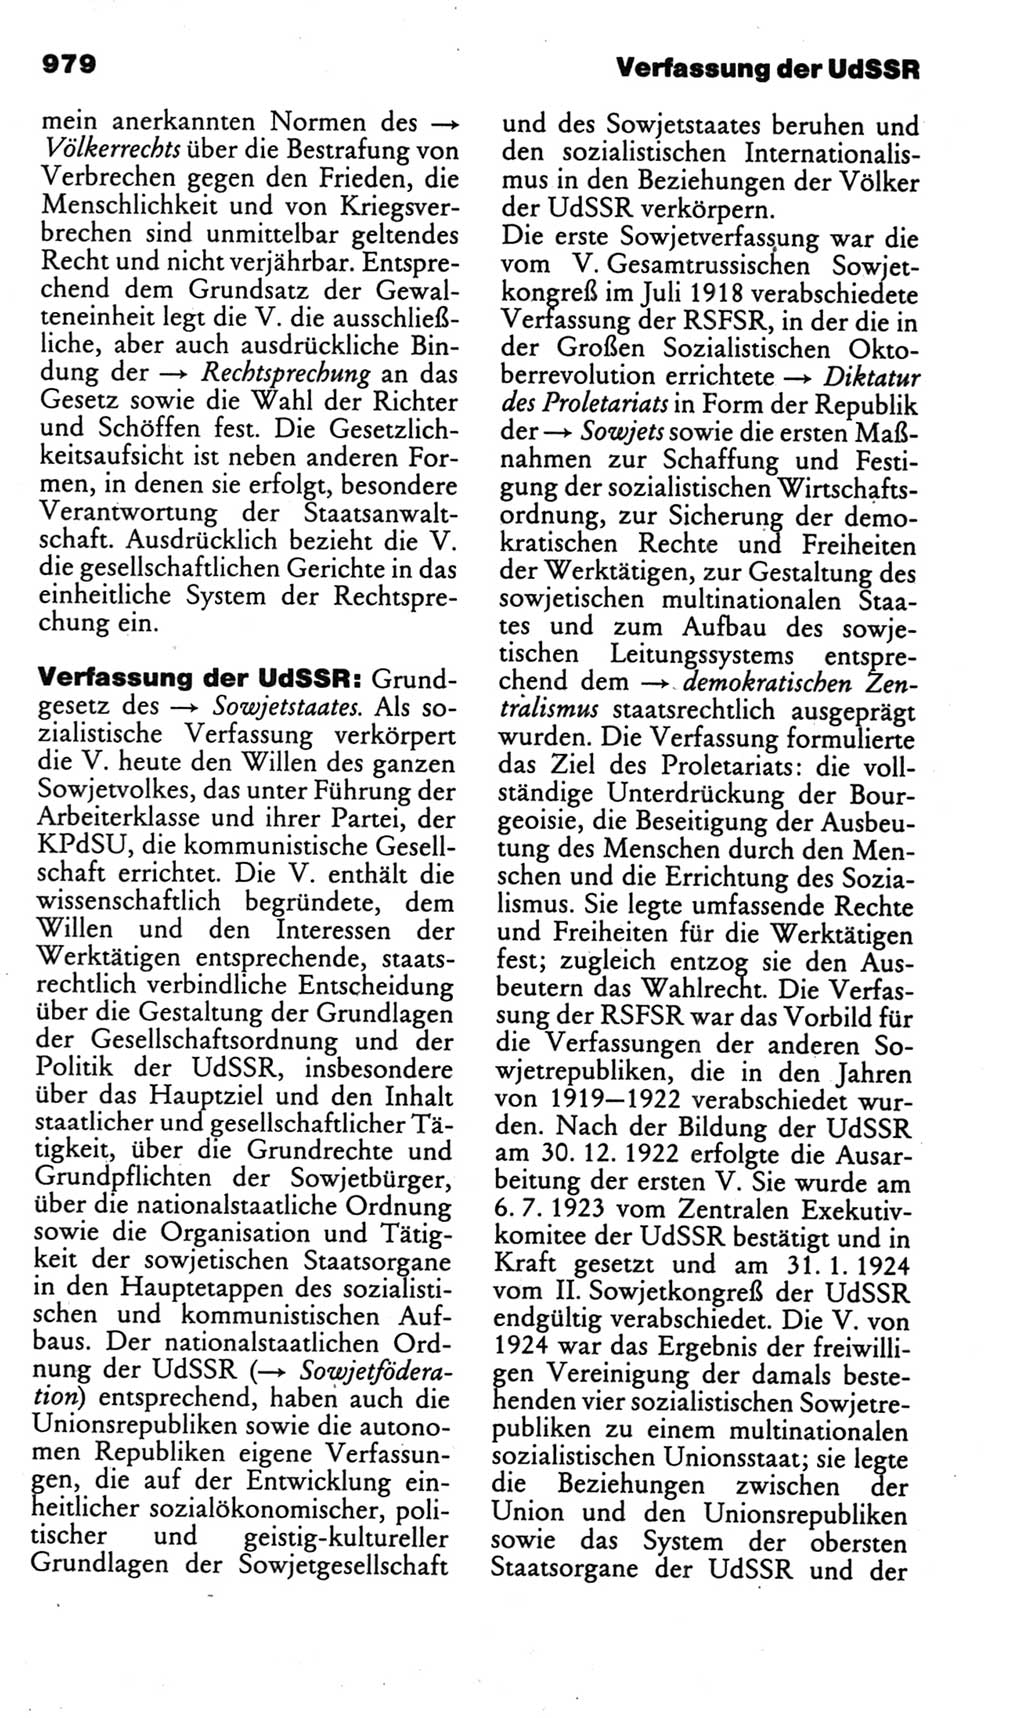 Kleines politisches Wörterbuch [Deutsche Demokratische Republik (DDR)] 1985, Seite 979 (Kl. pol. Wb. DDR 1985, S. 979)